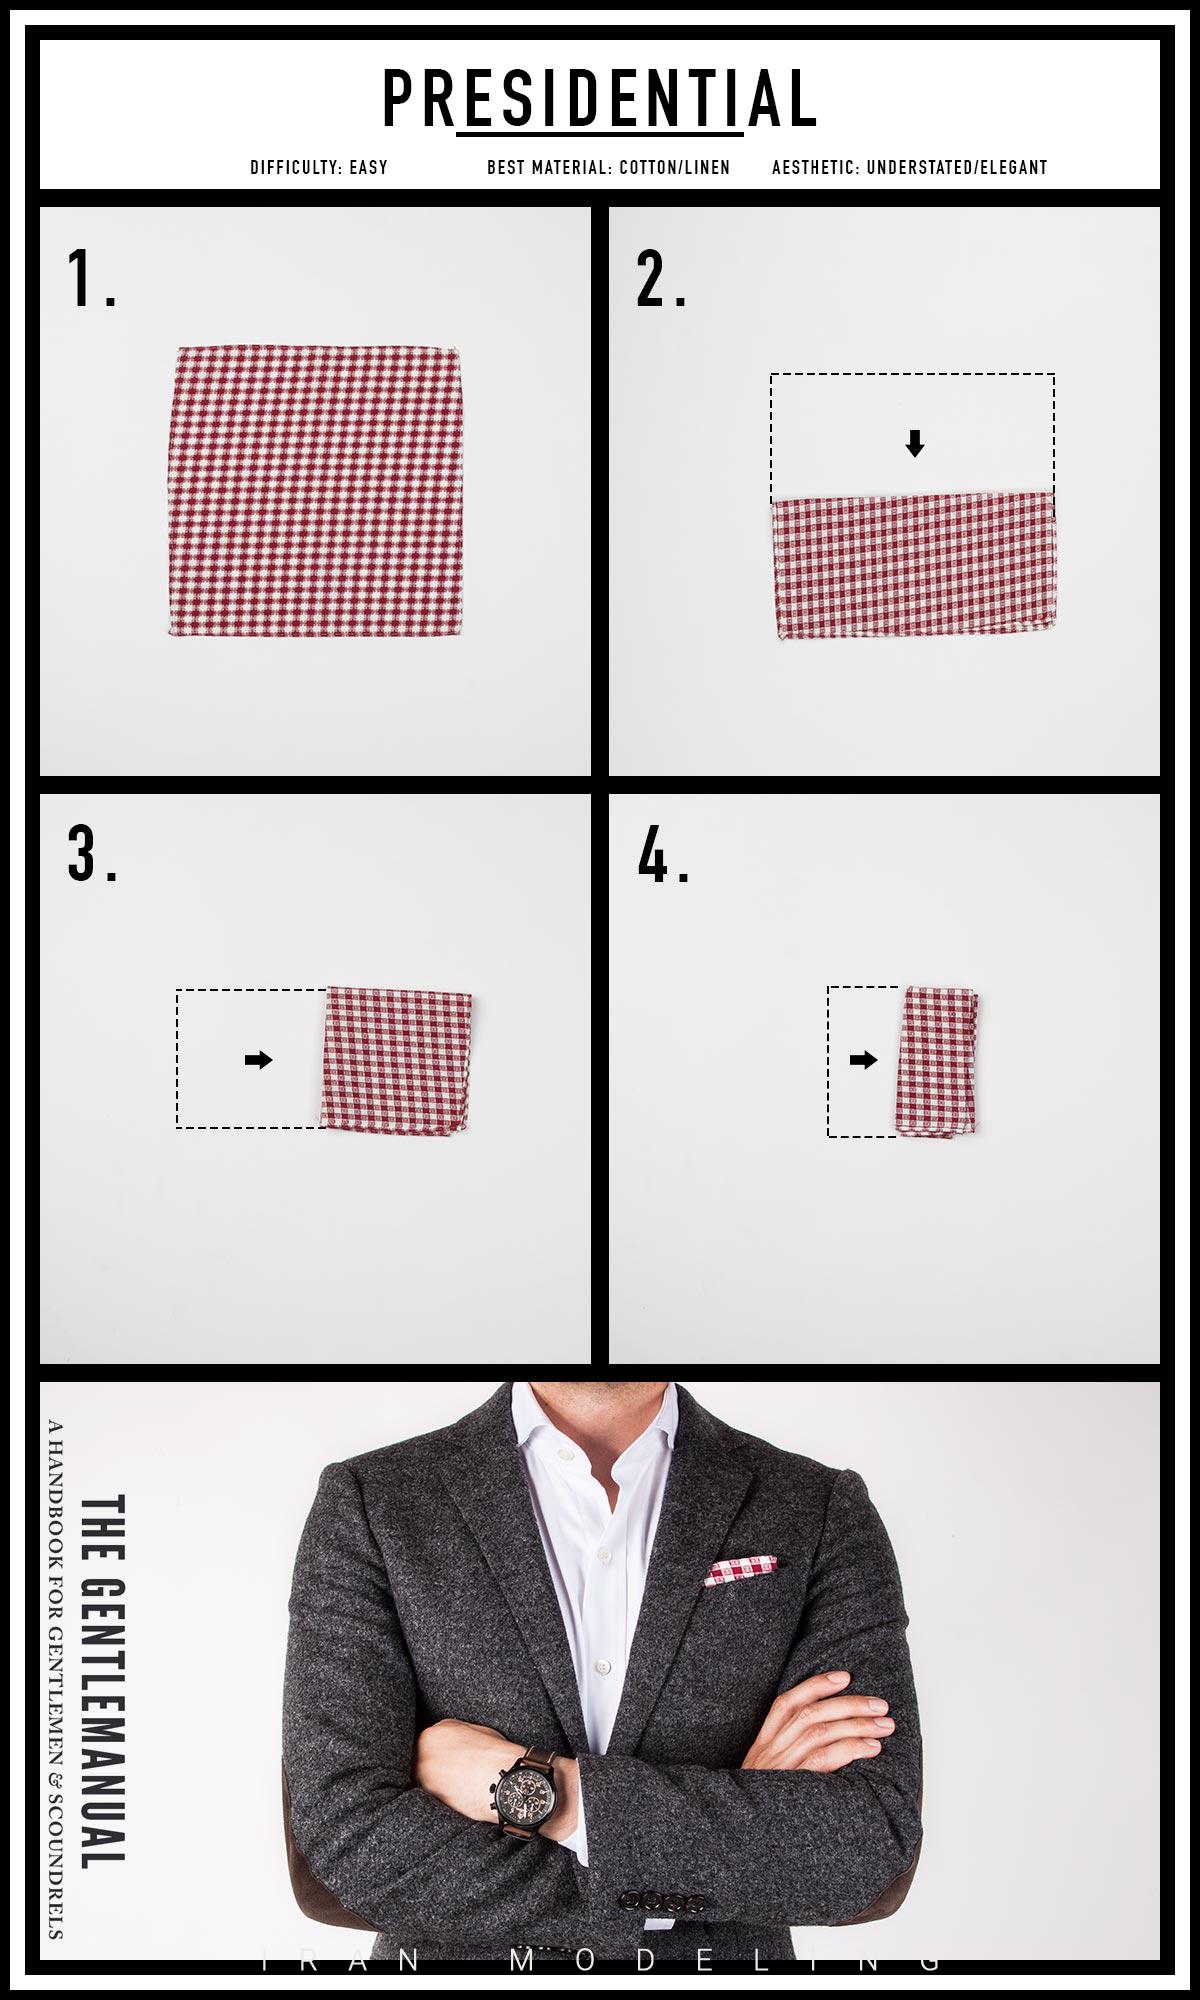 جدیدترین و بهترین طرح های دستمال جیبی کت آقایان امسال 2020 در رنگا های مختلف ایران مدلینگ